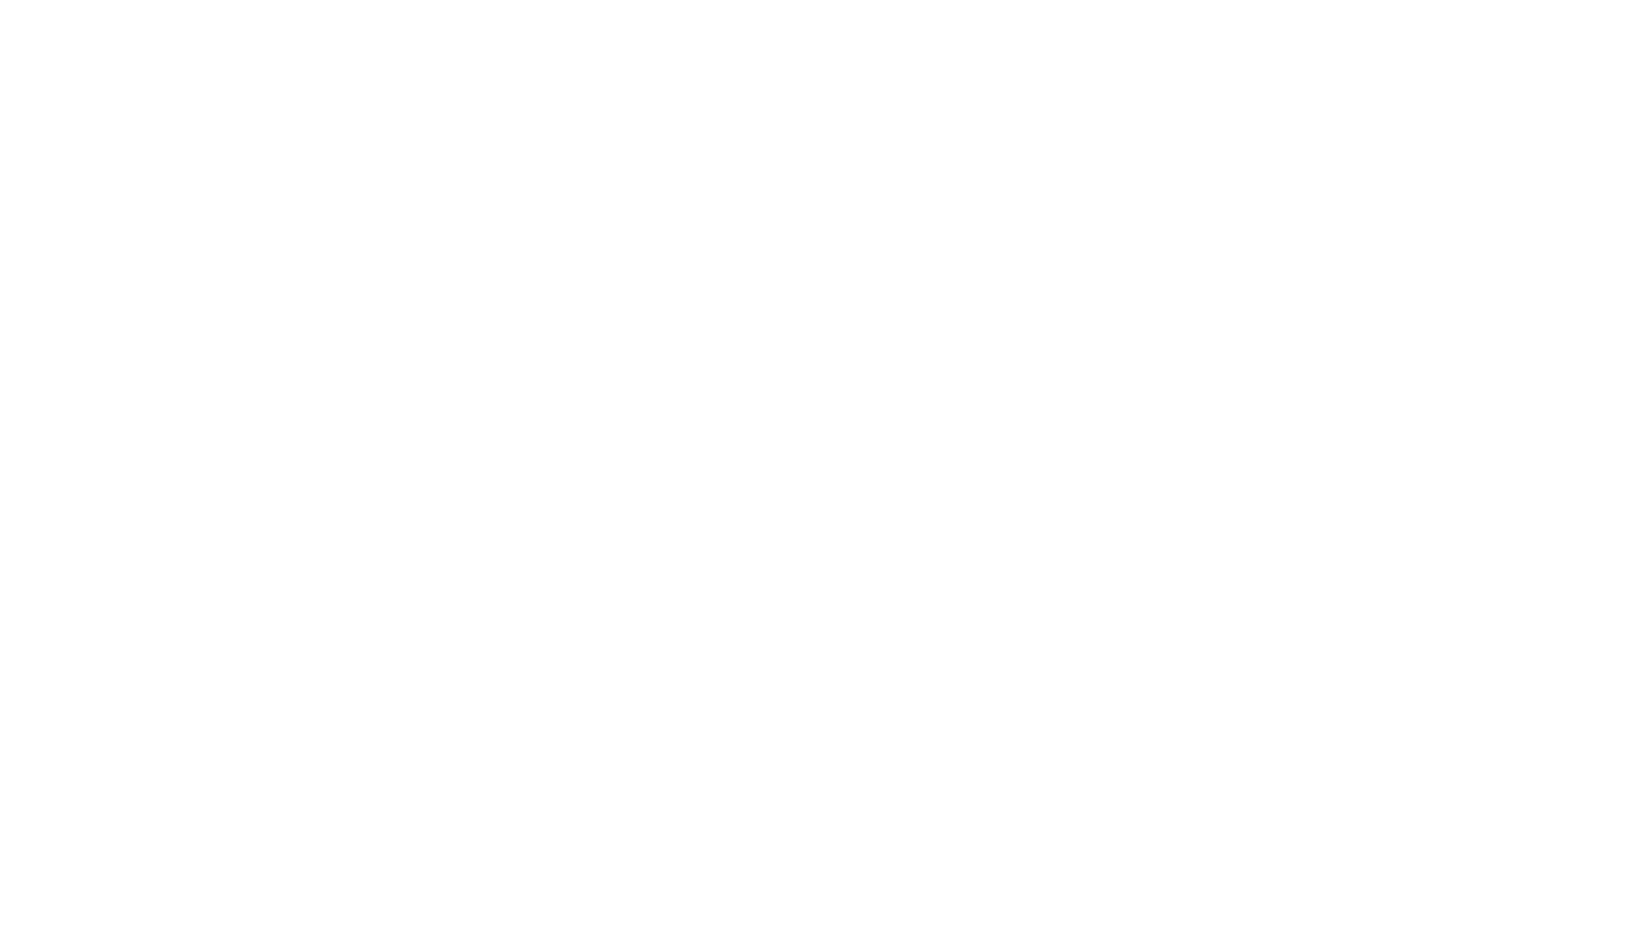 Jerusalem Project